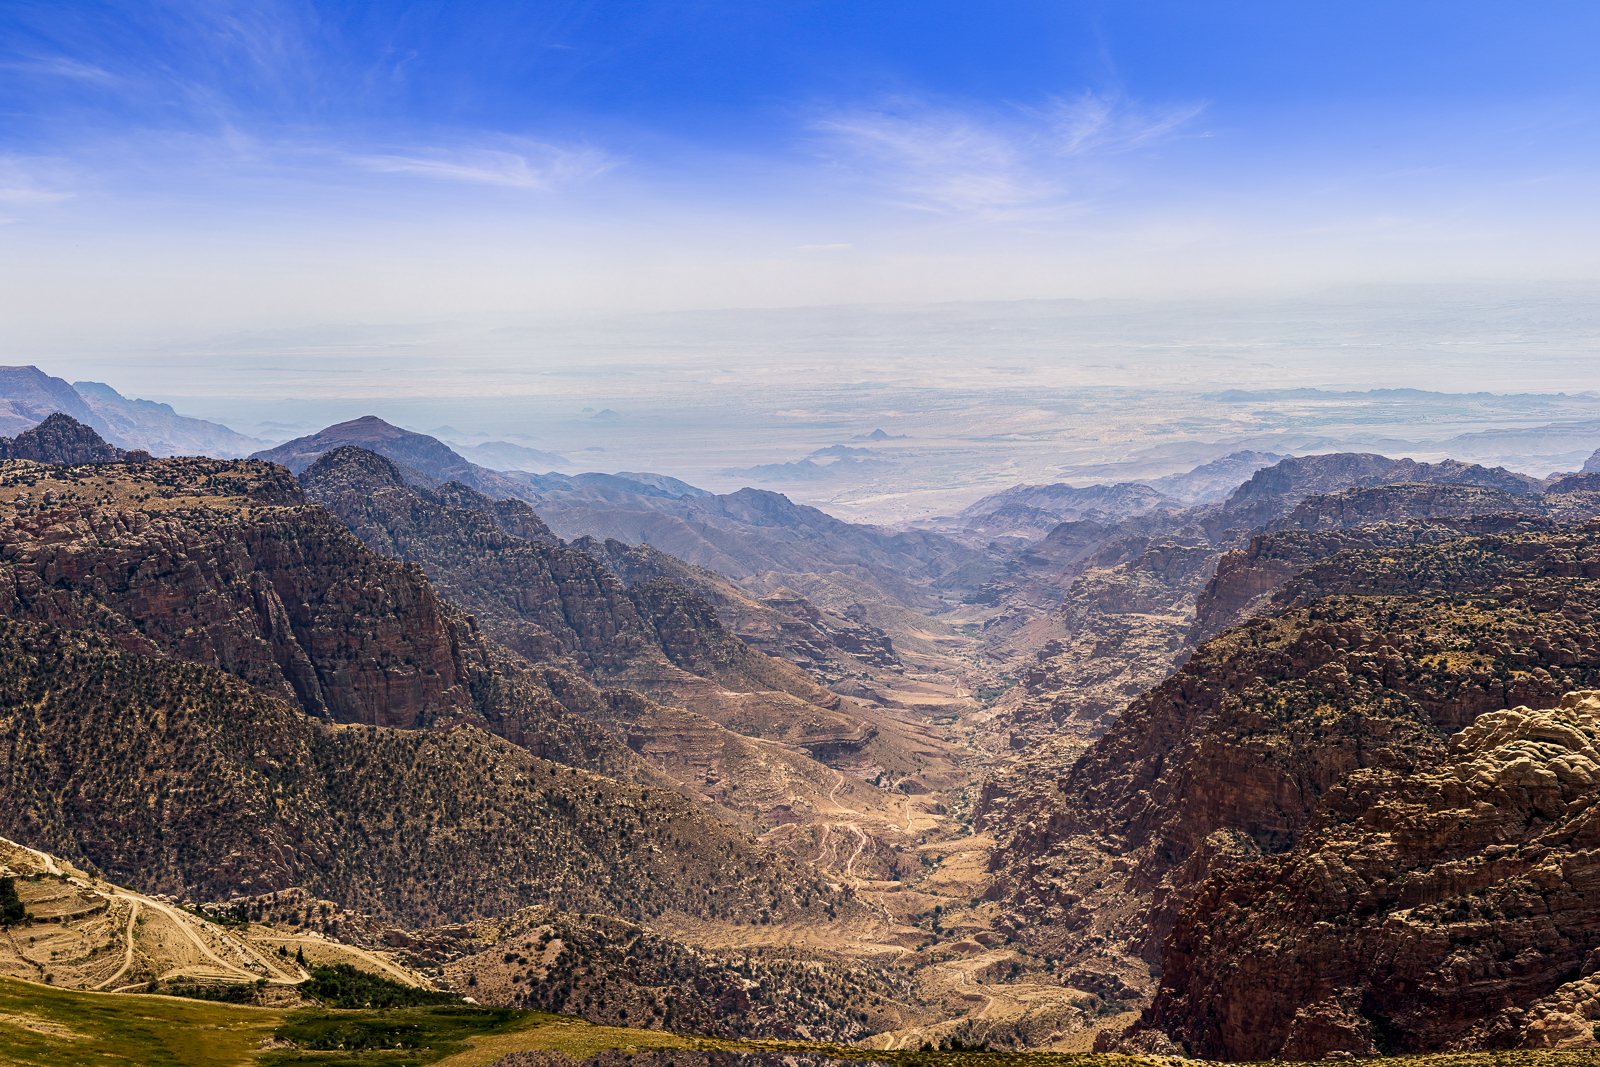 Aerial view of the Dana Nature Reserve in Jordan